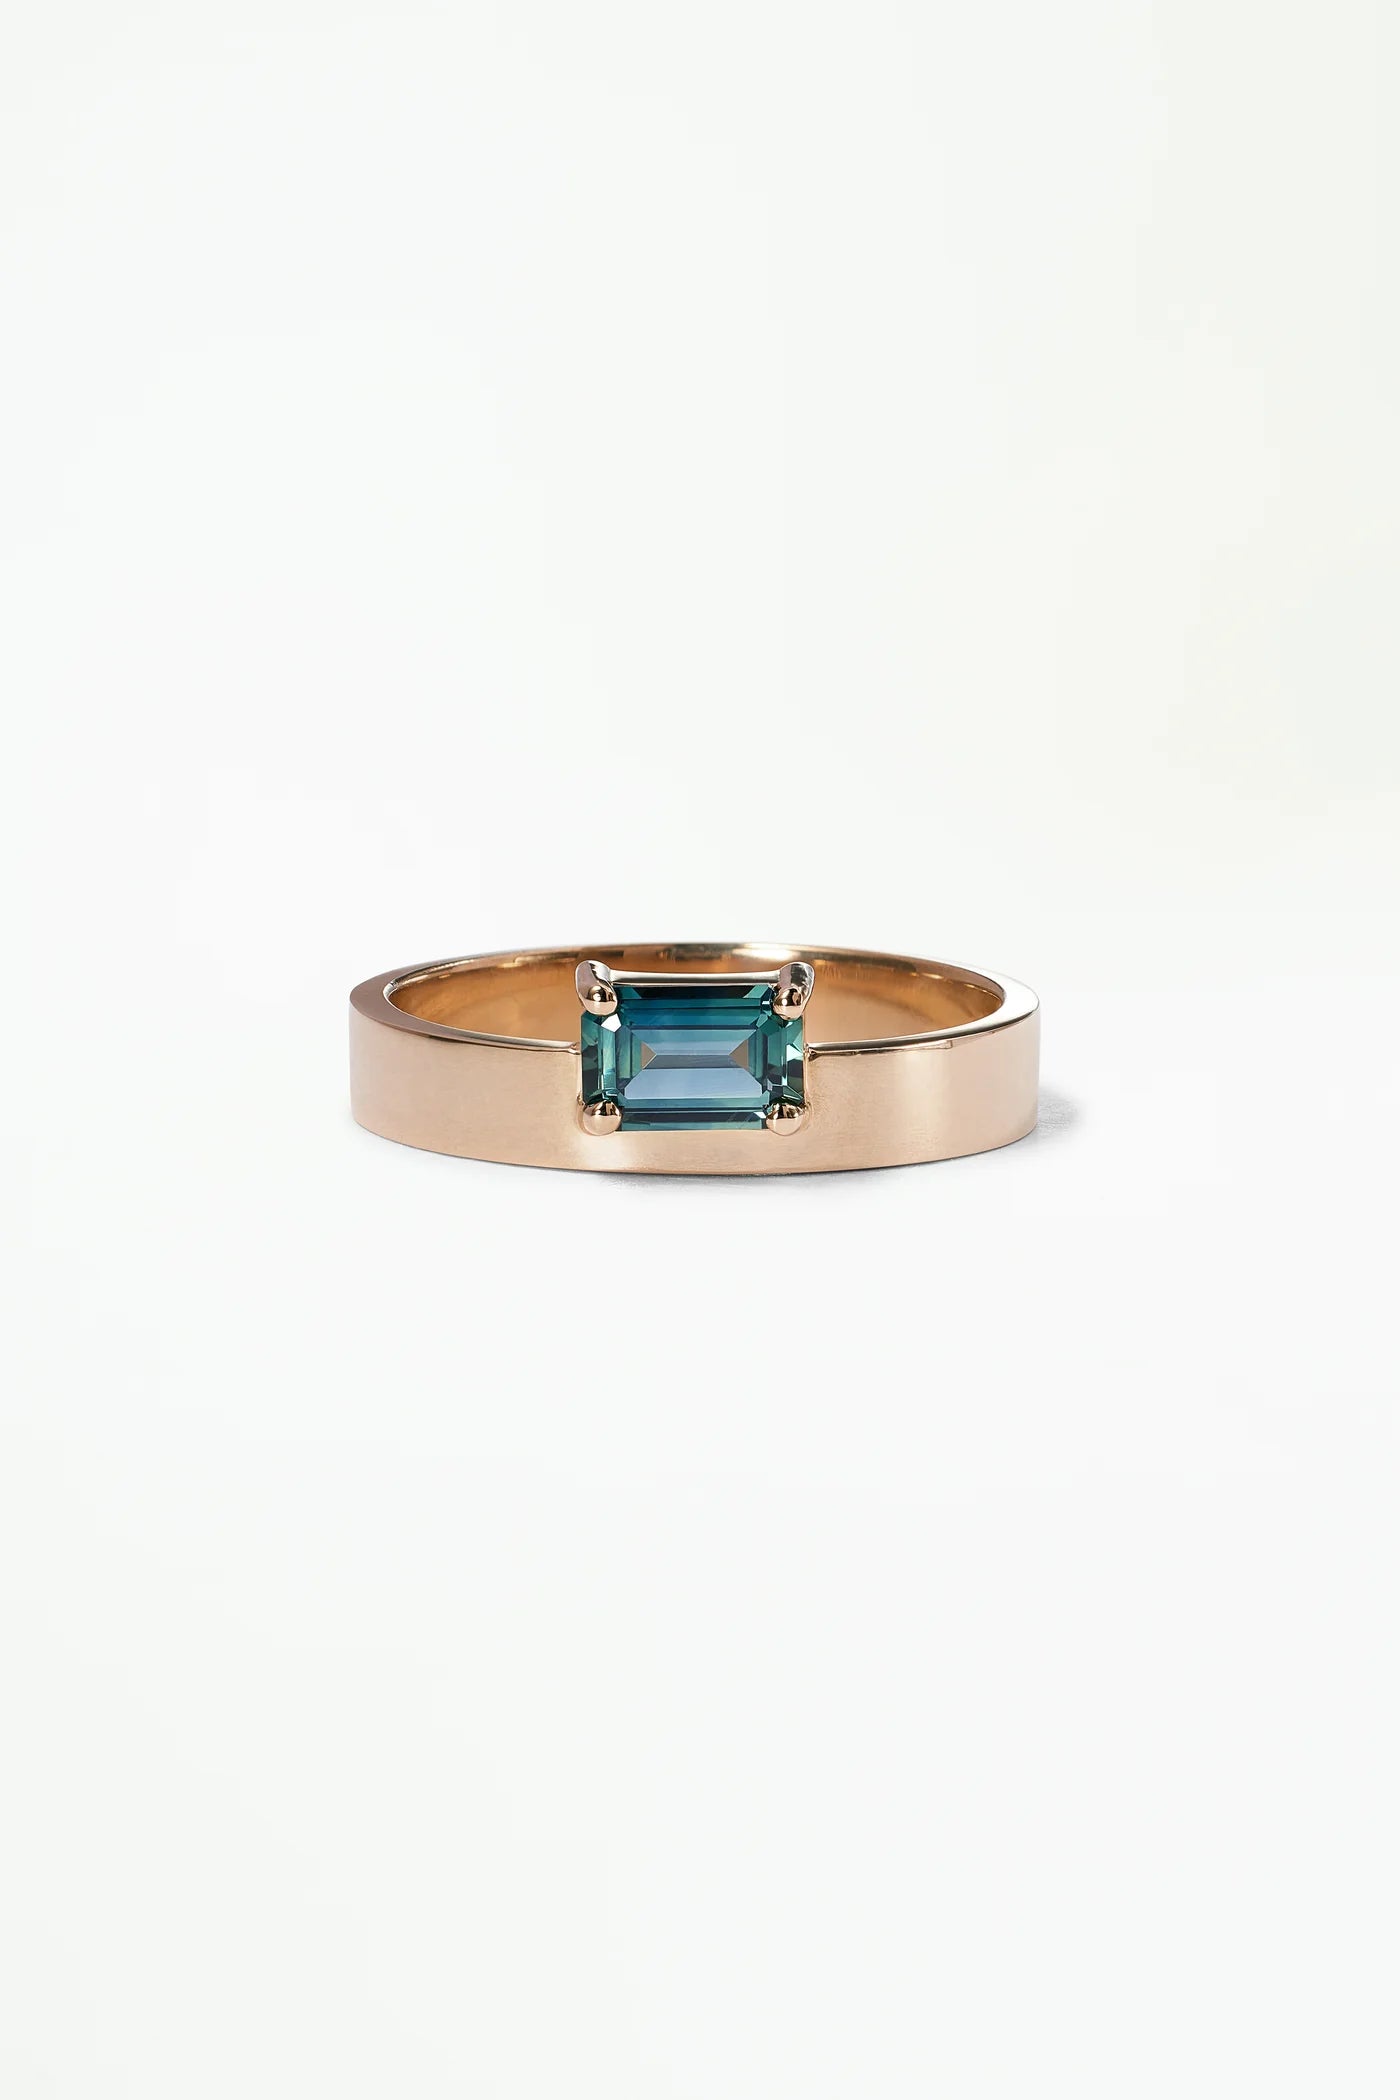 wwake / medium horizontal emerald sapphire monolith ring